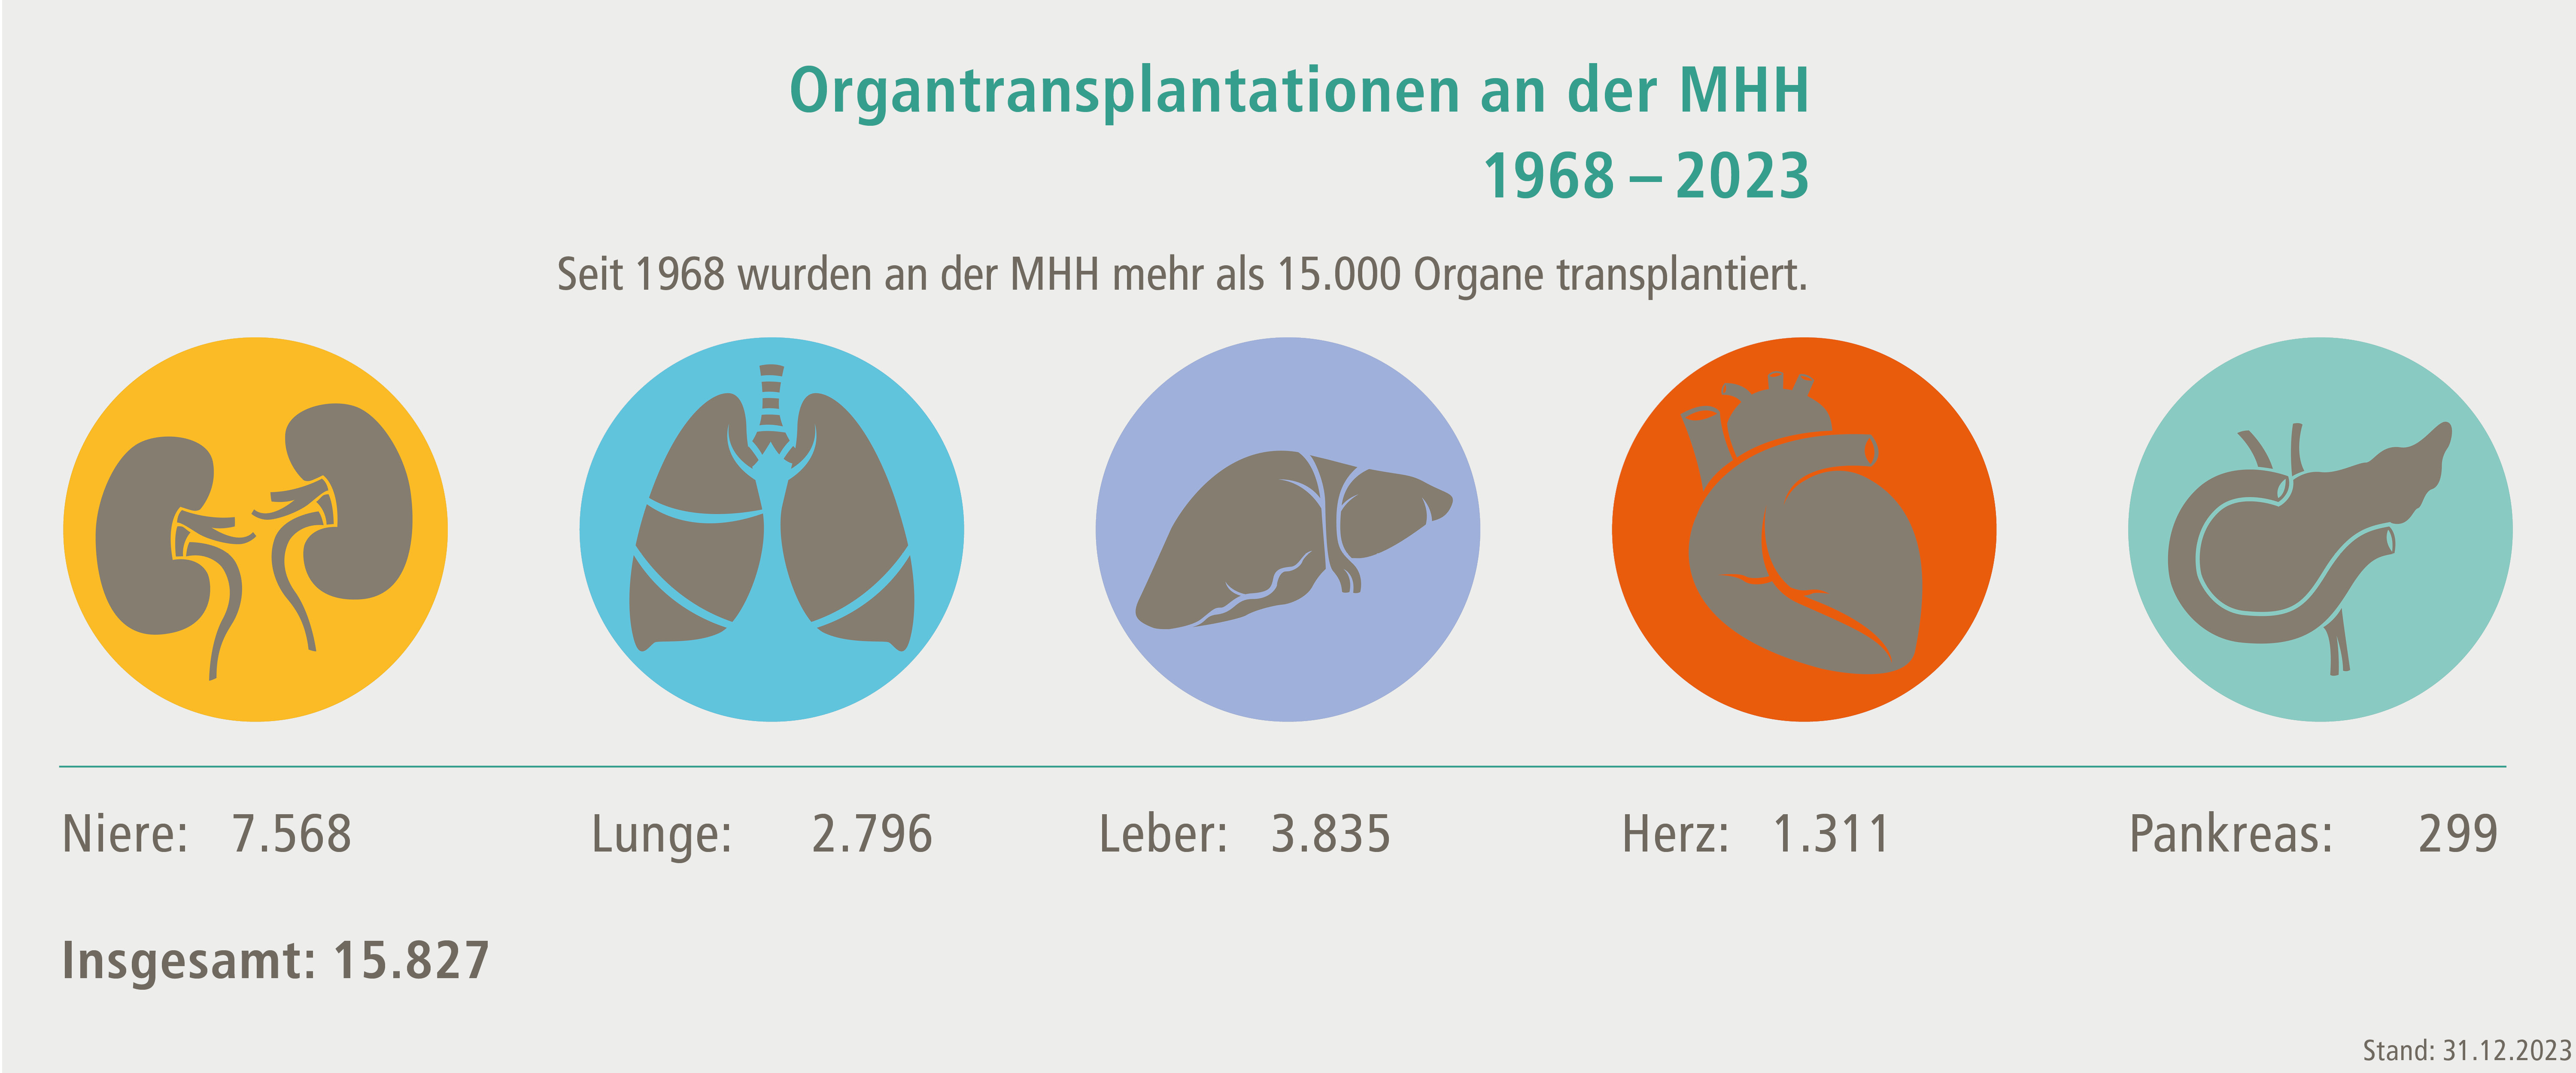 Seit 1968 wurden an der MHH mehr als 15.000 Organe transplantiert.7.419 Nieren, 2.704 Lungen, 3.772 Lebern, 1.292 Herzen und 295 Bauspeicheldrüsen. Ende 2023 waren es insgesamt 15.827 Organe. Copyright: MHH-Transplantationszentrum